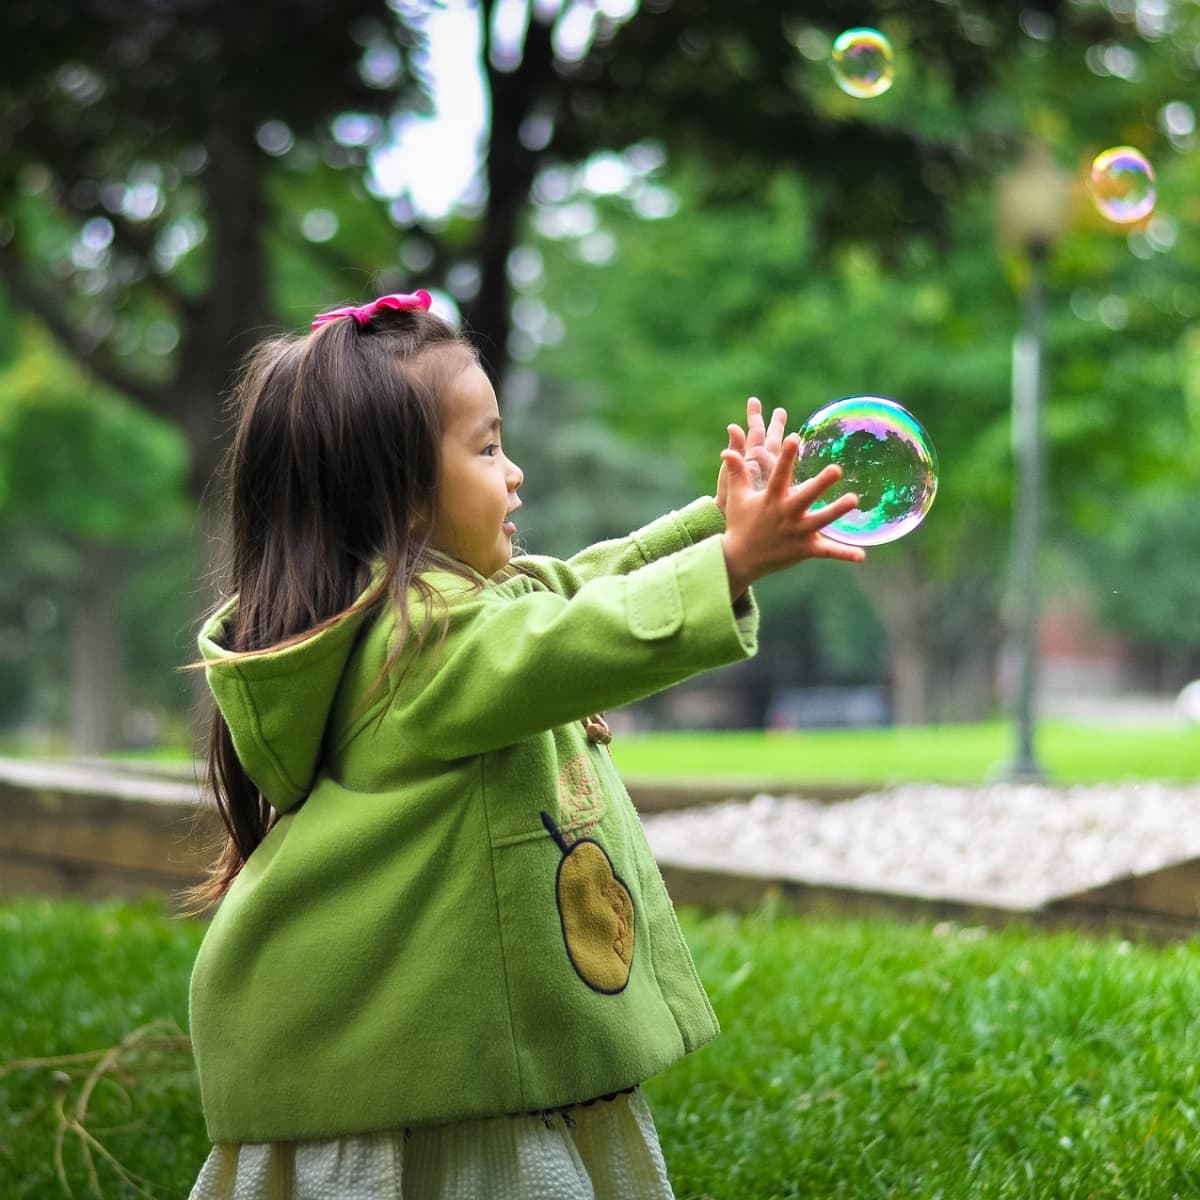 9 Fun Preschool Science Activities for Kids - WeHaveKids